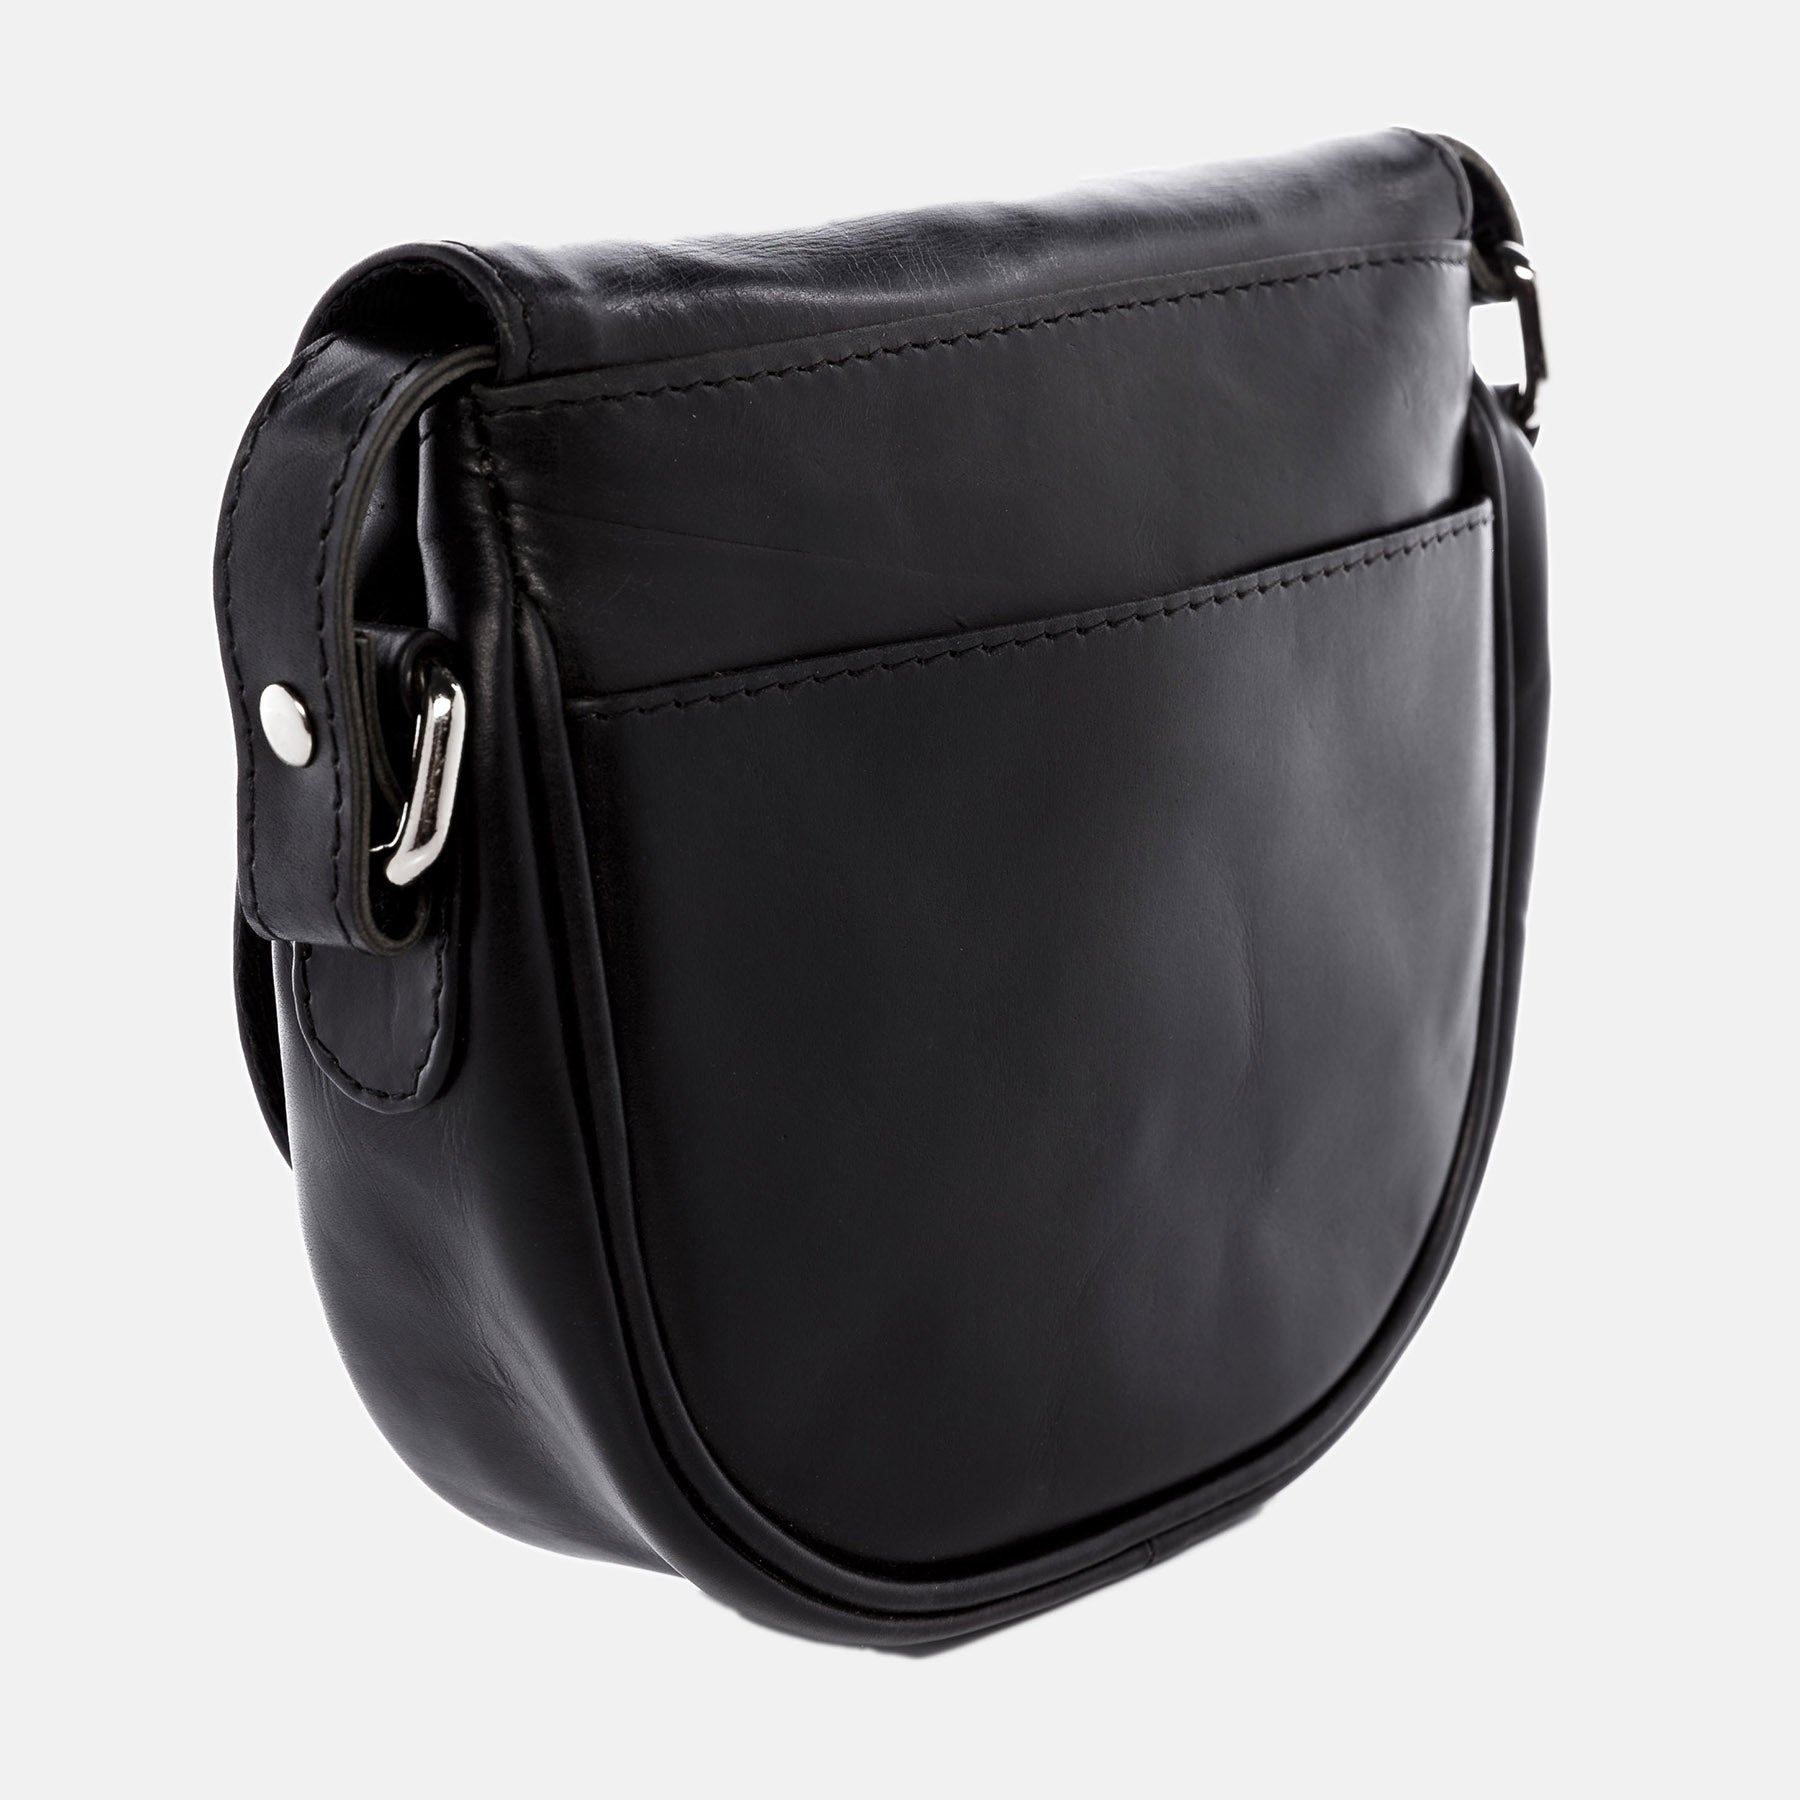 Shoulder bag BRIGHTON smooth leather black